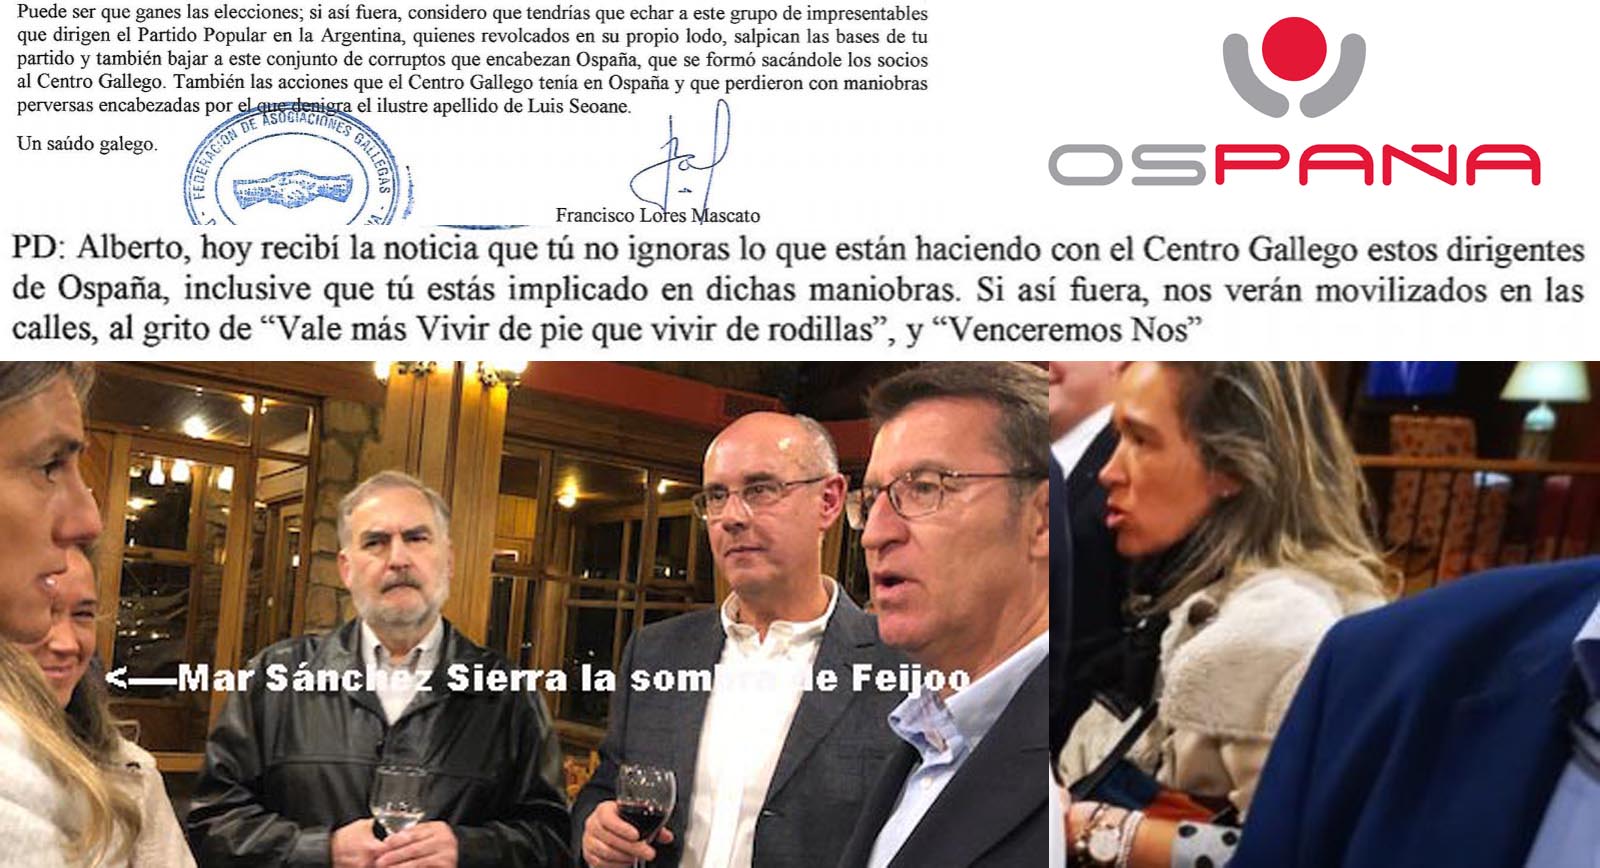 Xornal Galicia - JAKE MATE al "pelotazo urbanístico" orquestado por Feijóo  y Mar Sánchez Sierra con los bienes de la emigración en Uruguay.